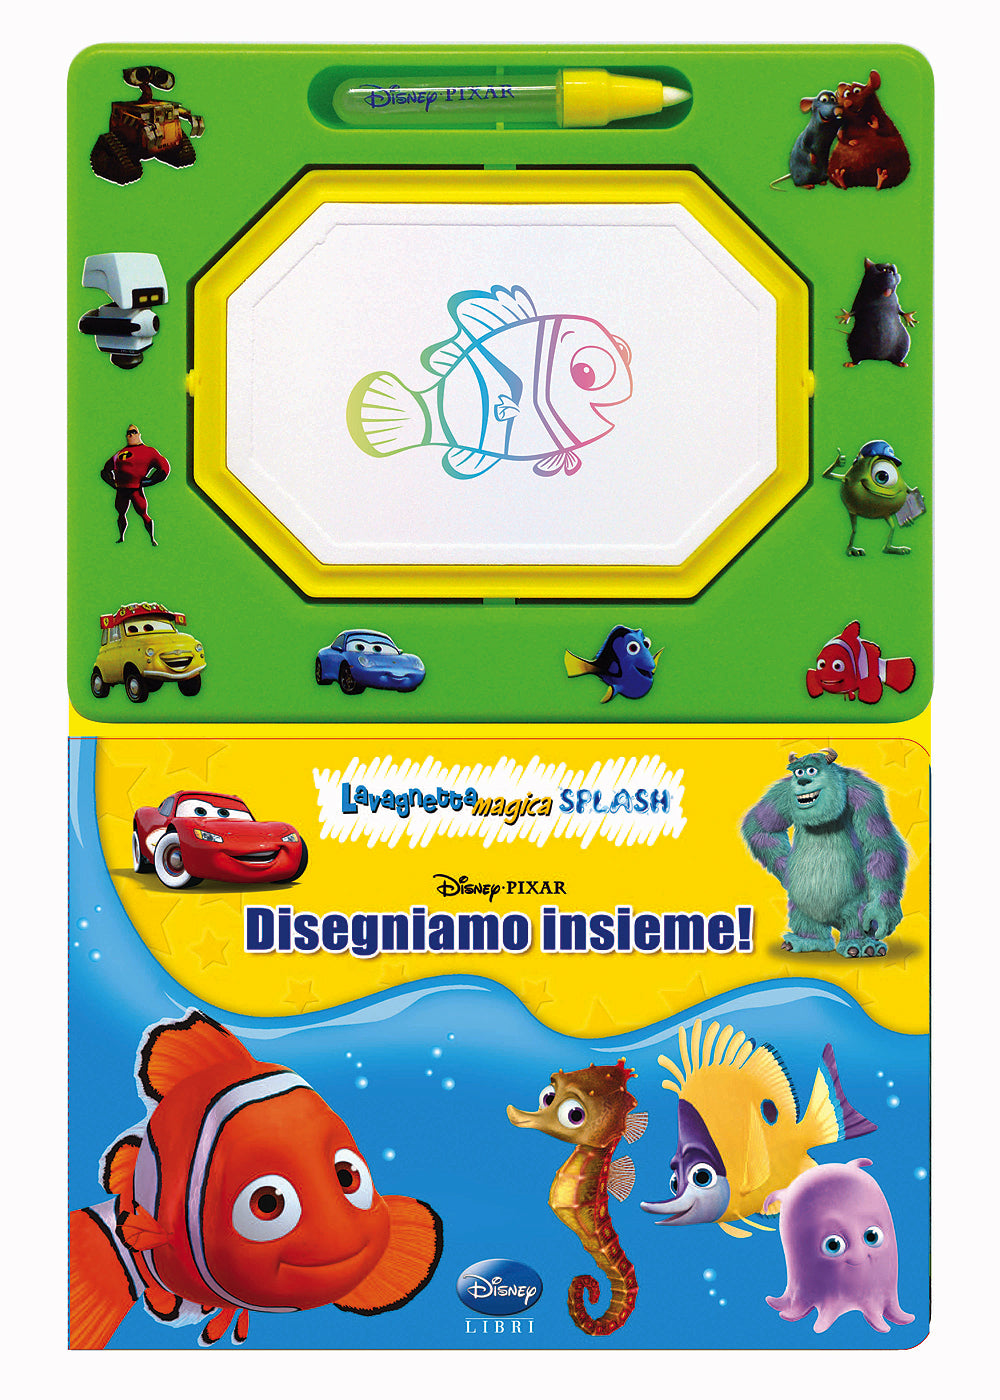 Lavagnetta magica Splash - Disney Pixar